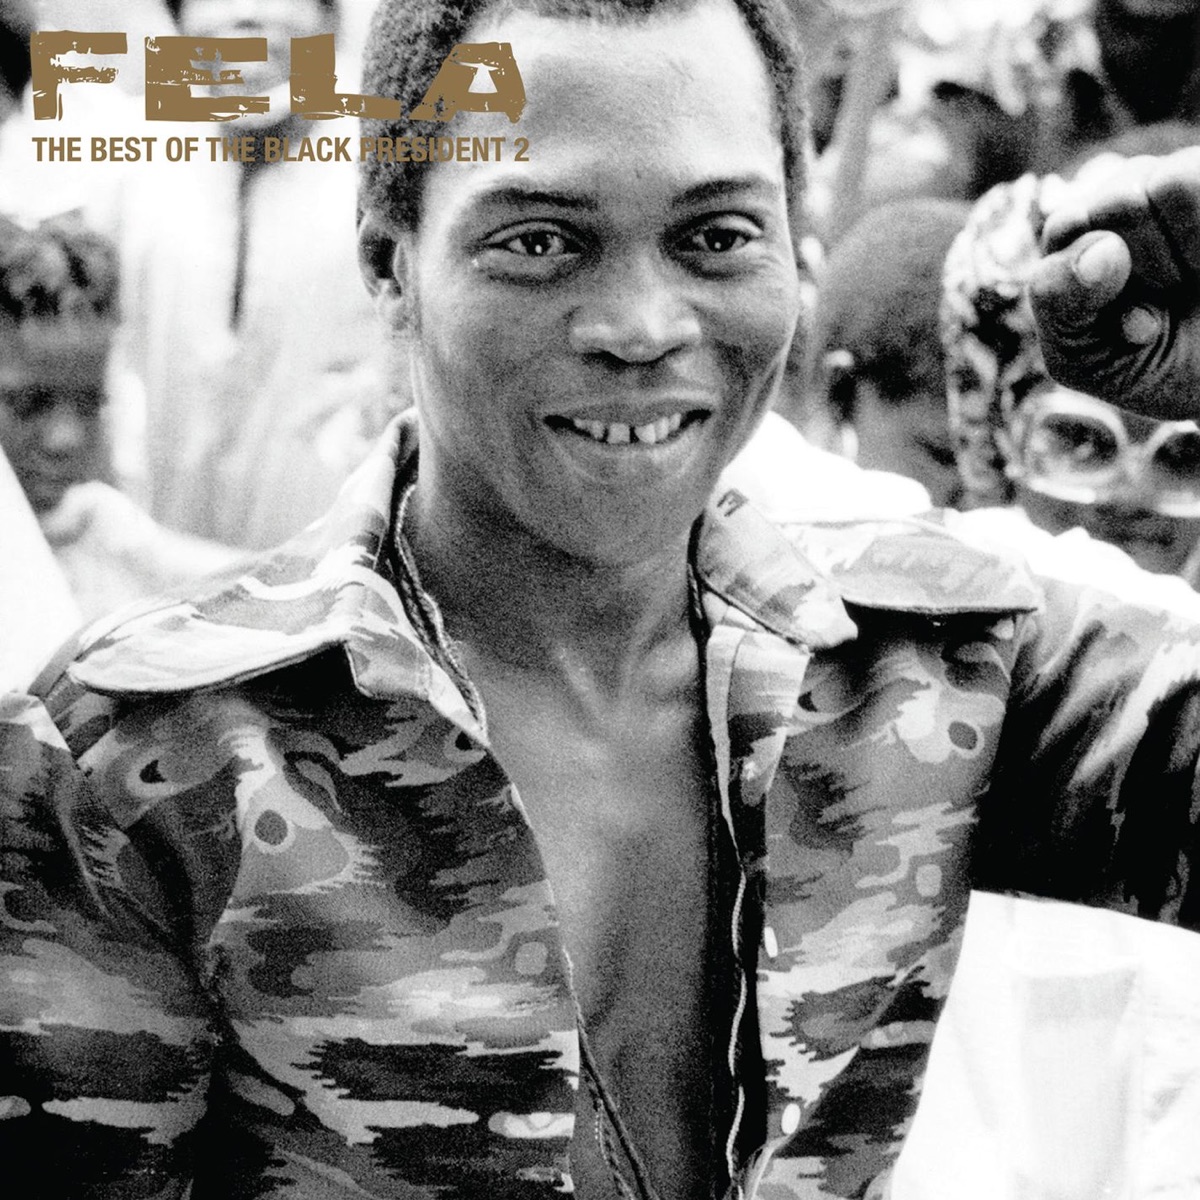 Fela Kuti - The Best of the Black President 2